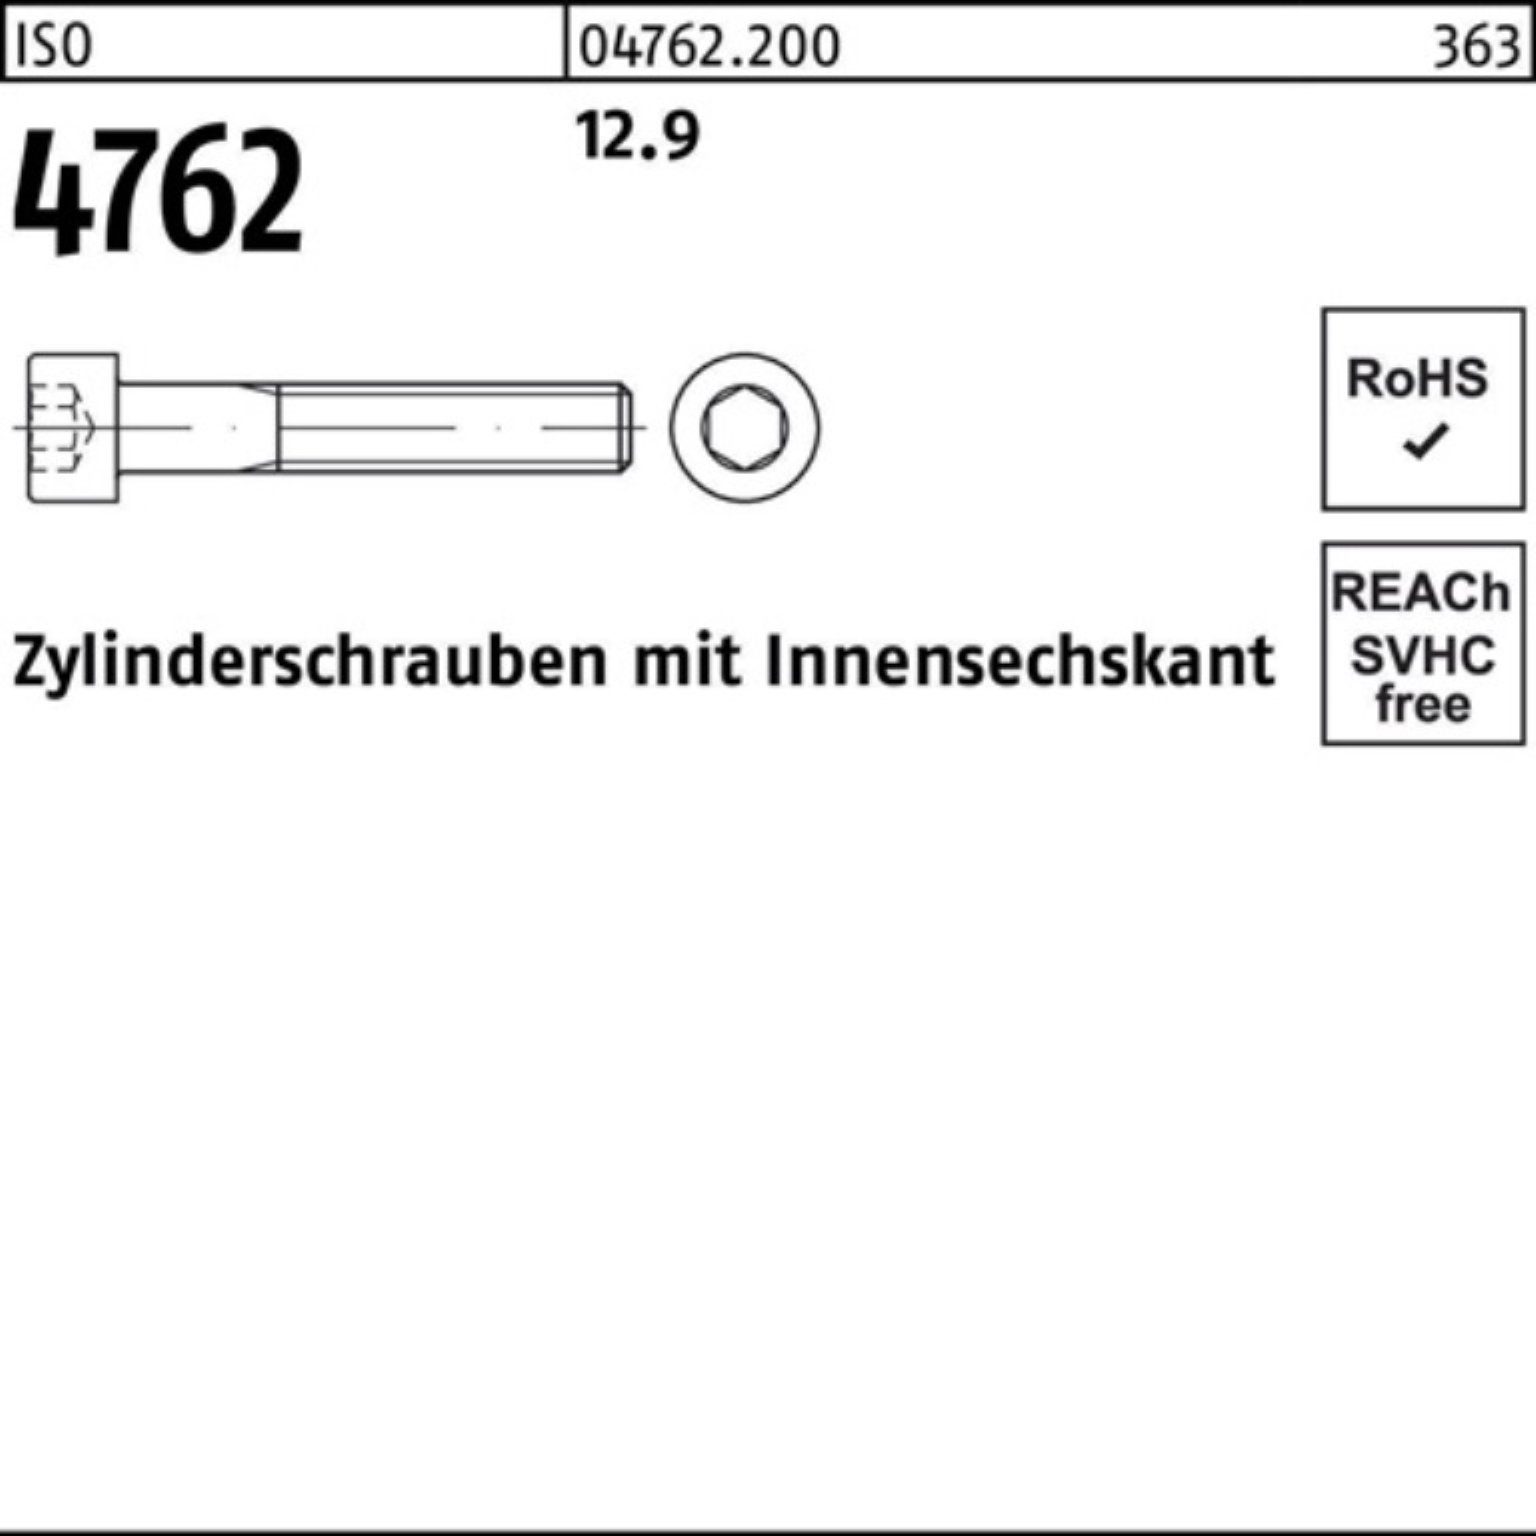 1 170 Zylinderschraube 12.9 Stück M39x 4762 Zylinderschraube Reyher Pack ISO 100er Innen-6kt